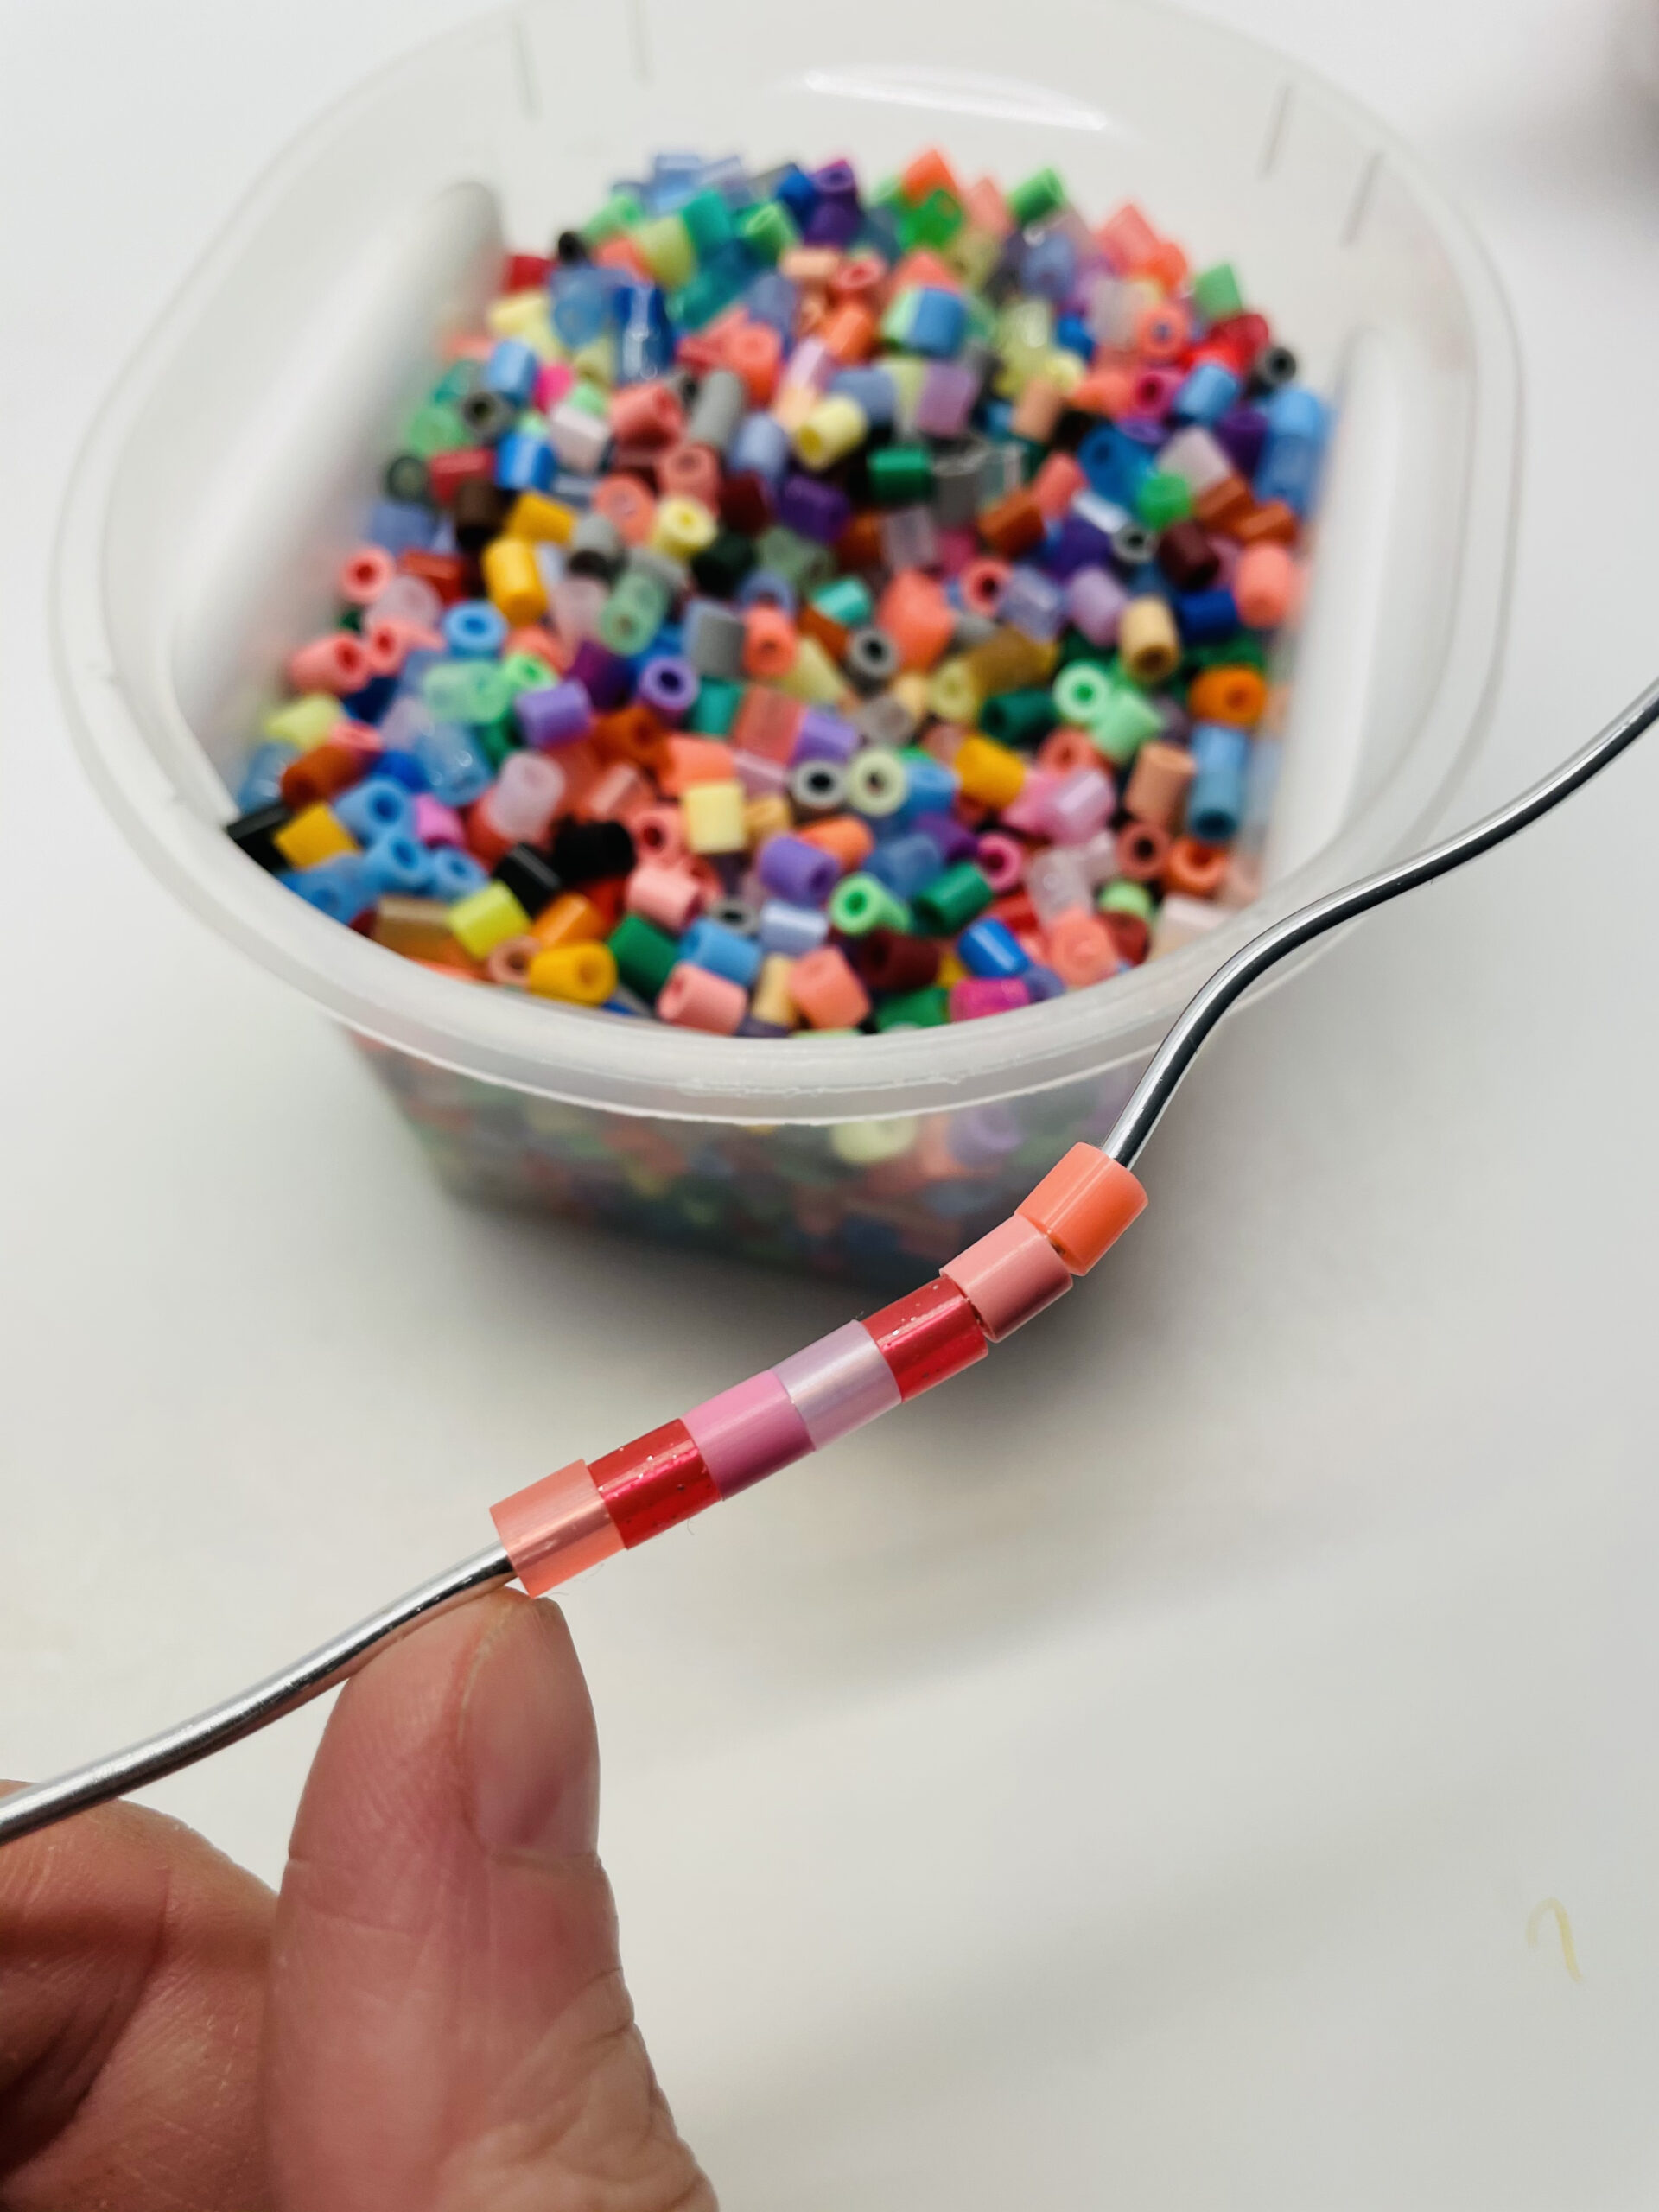 Bild zum Schritt 4 für das Bastel- und DIY-Abenteuer für Kinder: 'Ihr könnt z.B. Bügelperlen in ähnlichen Farbtönen verwenden, wie hier...'